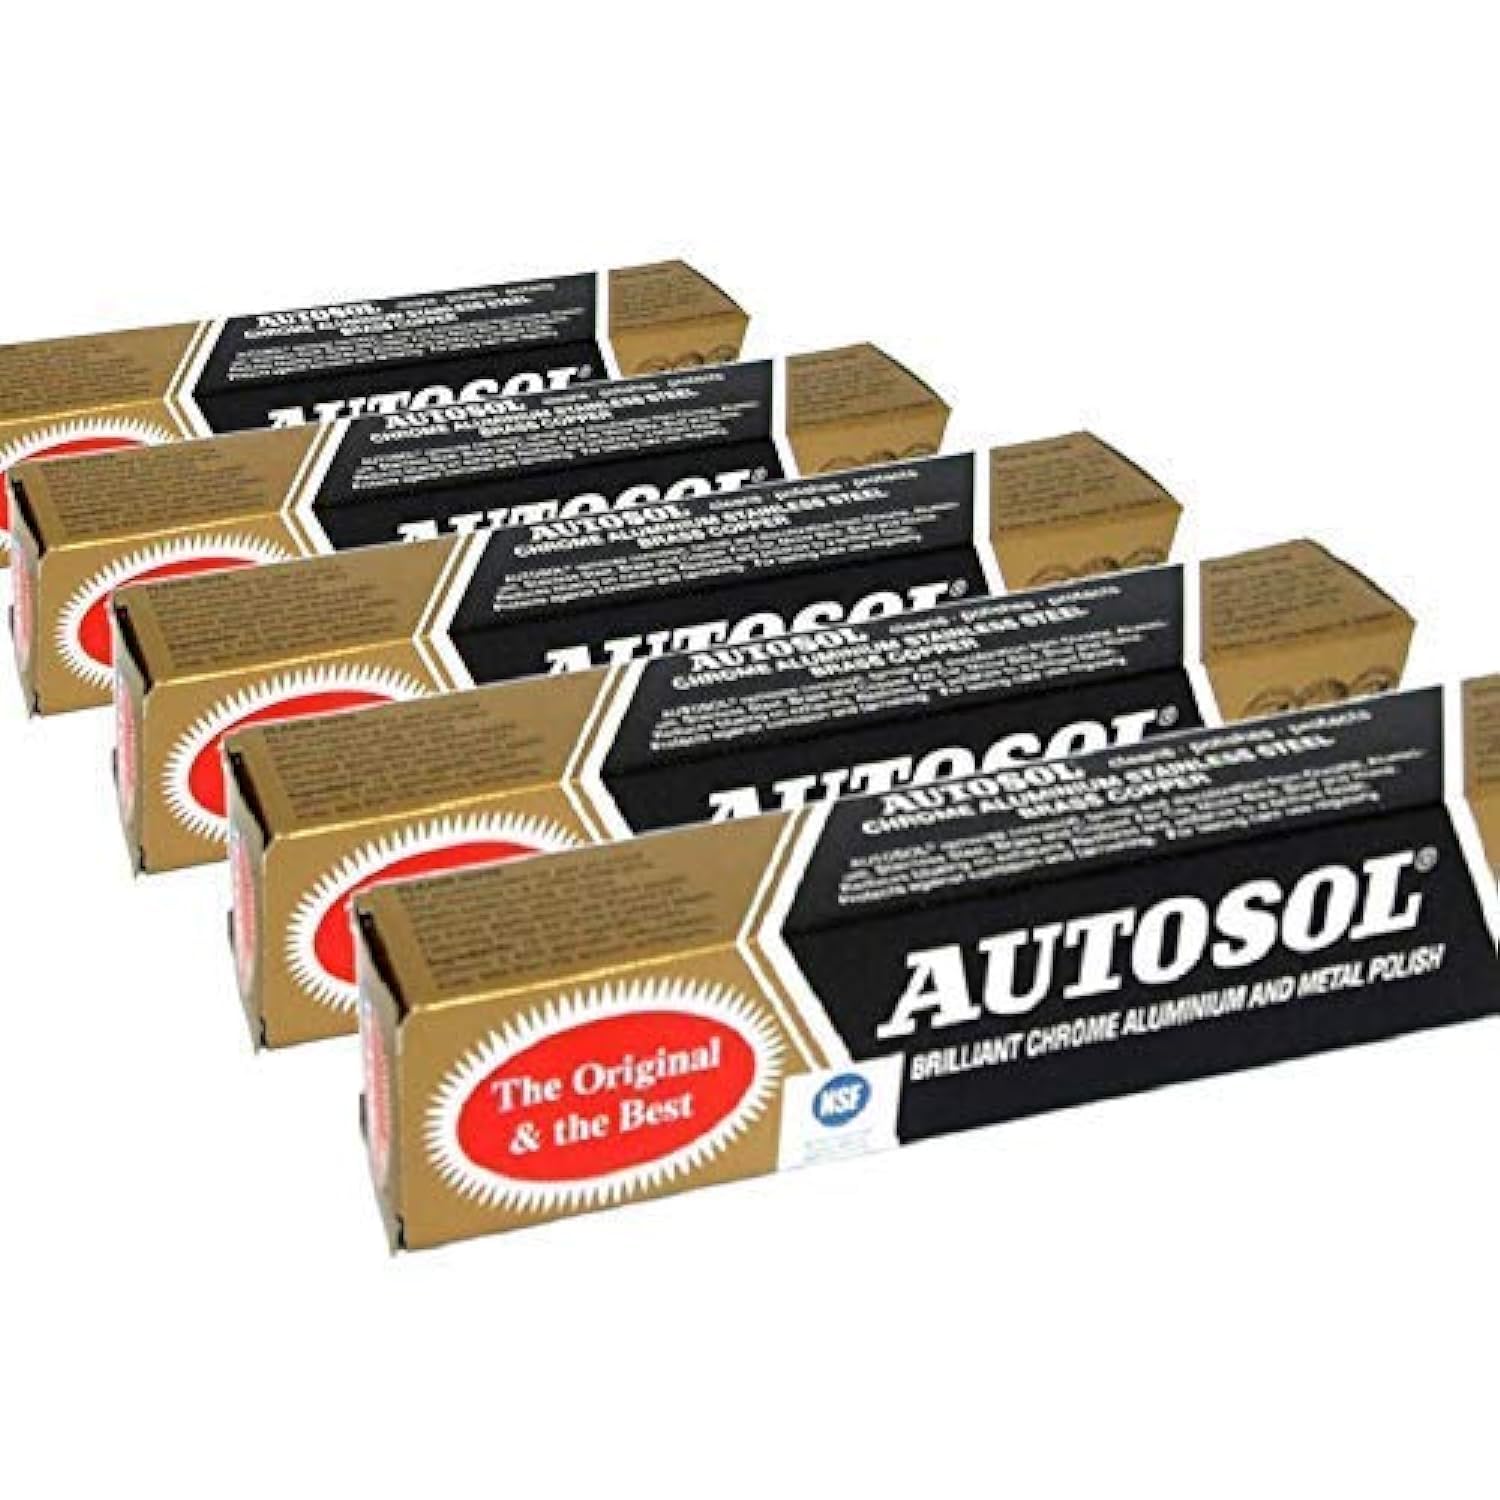 Autosol 5er Pack Metall Politur (75ml X5) Chrom Alu Edelstahl Messing Kupfer Usw